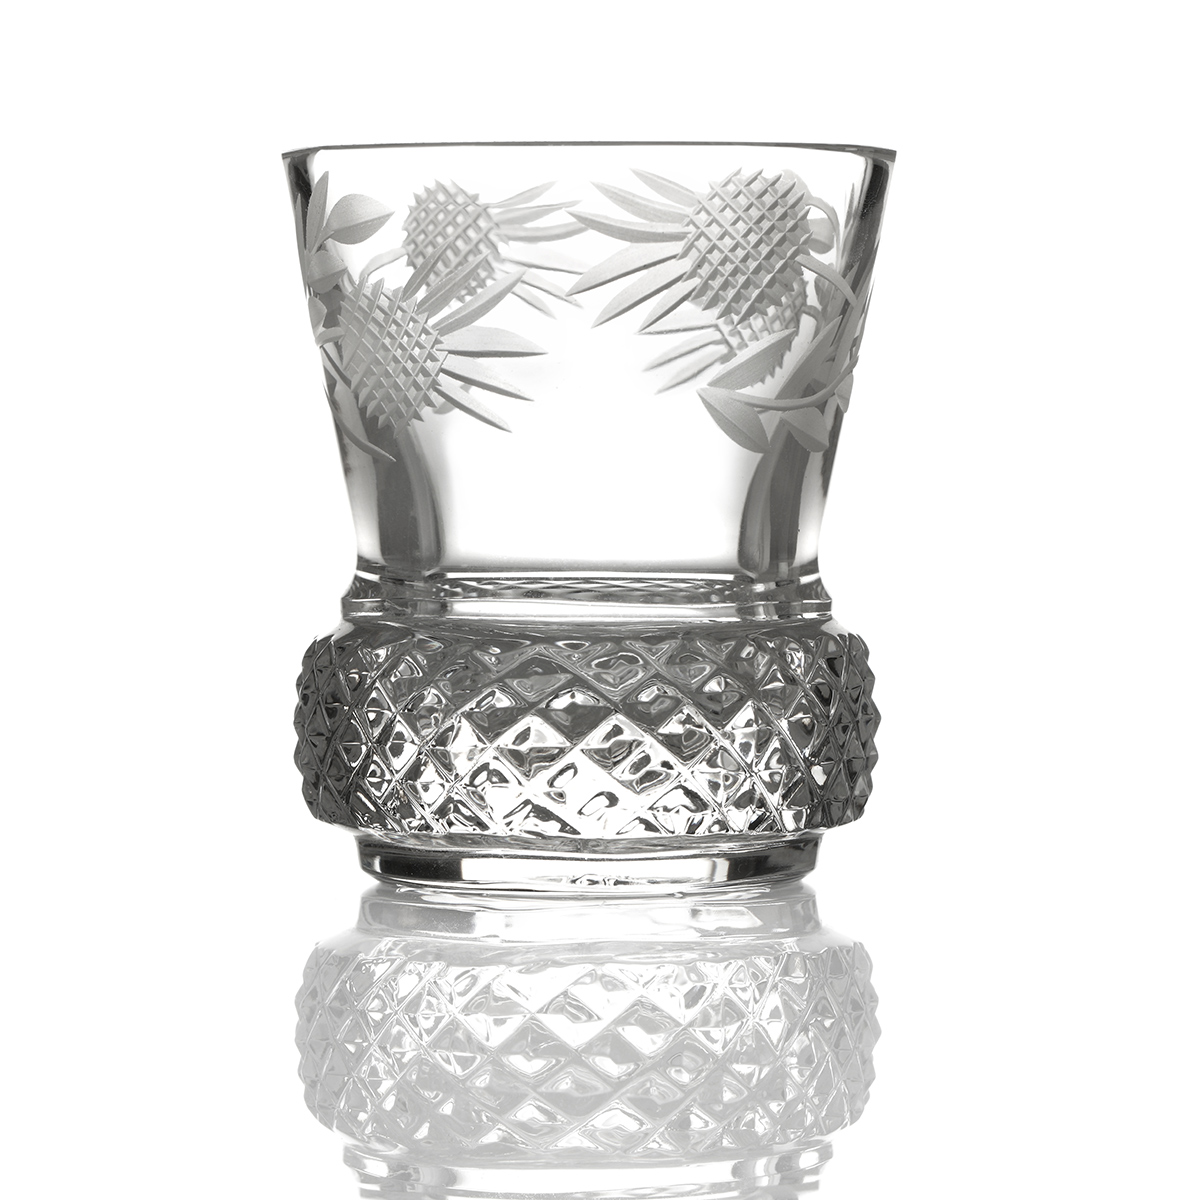 Flower of Scotland - Kristall Whisky Shotglas aus Schottland in Form einer Distel